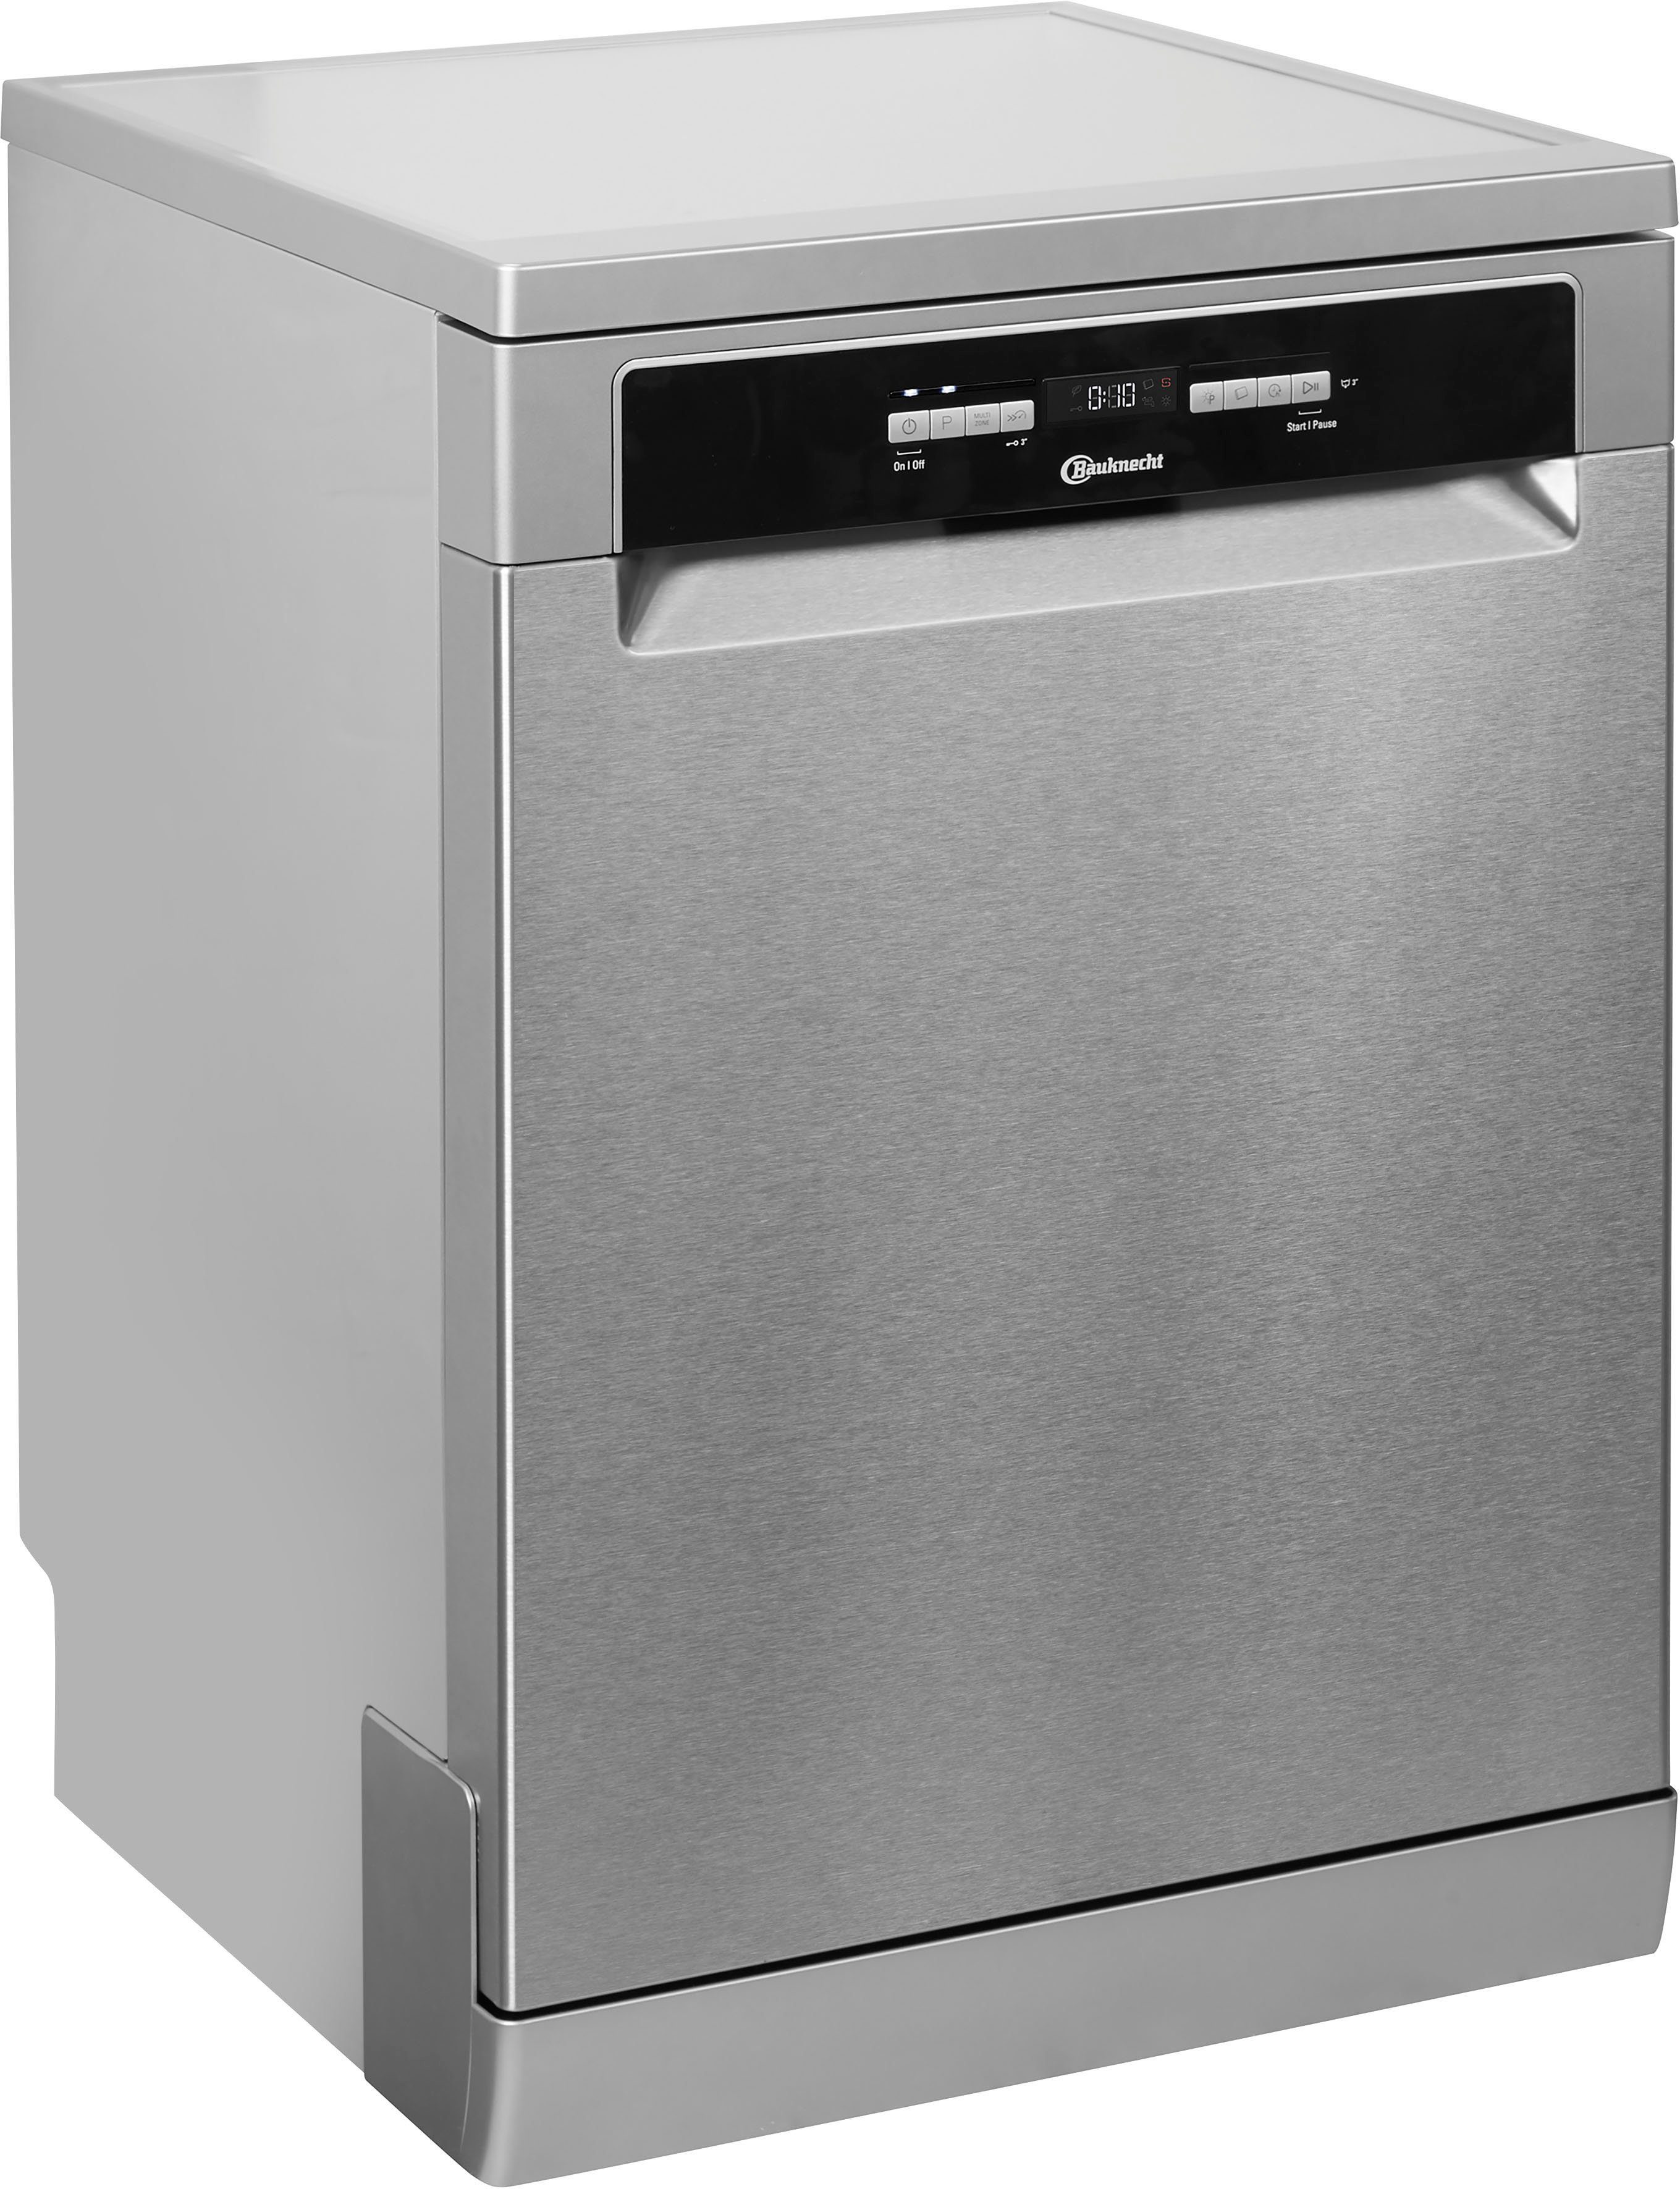 Geschirrspüler mit Besteckschublade kaufen » Spülmaschine | OTTO